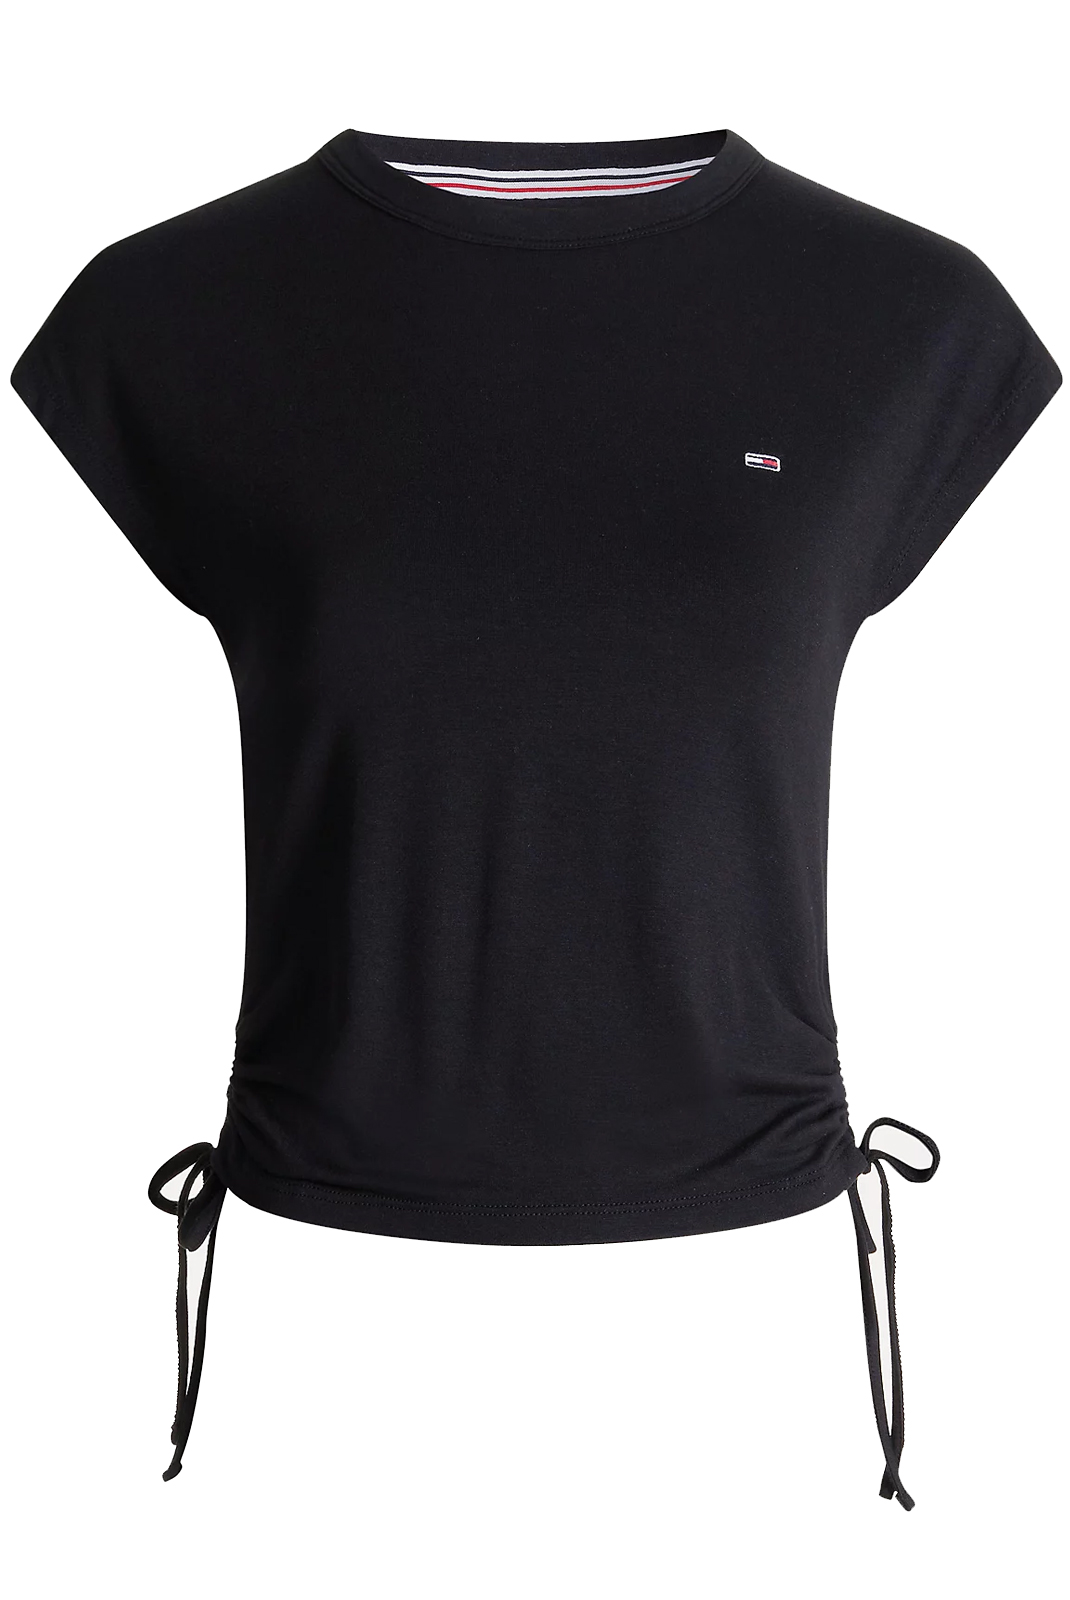 Tee-shirt noir femme Tommy Jeans - Dw0dw09776